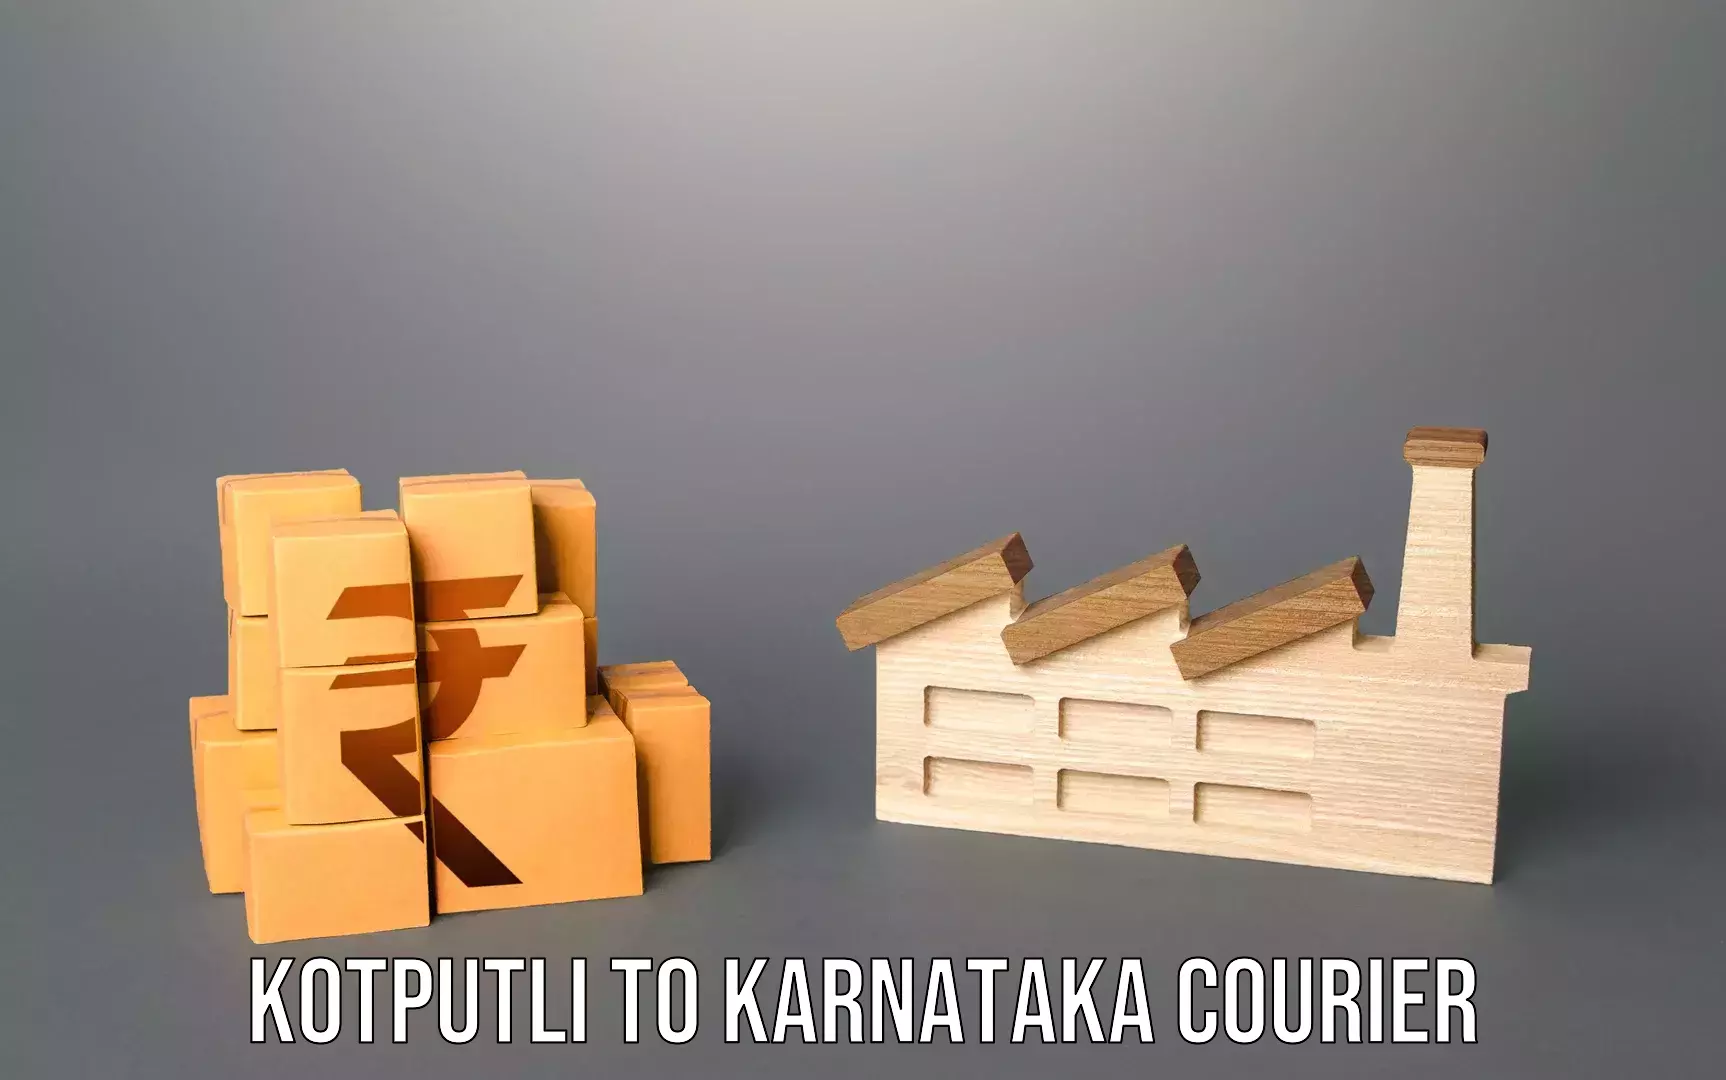 Premium luggage courier in Kotputli to Karnataka